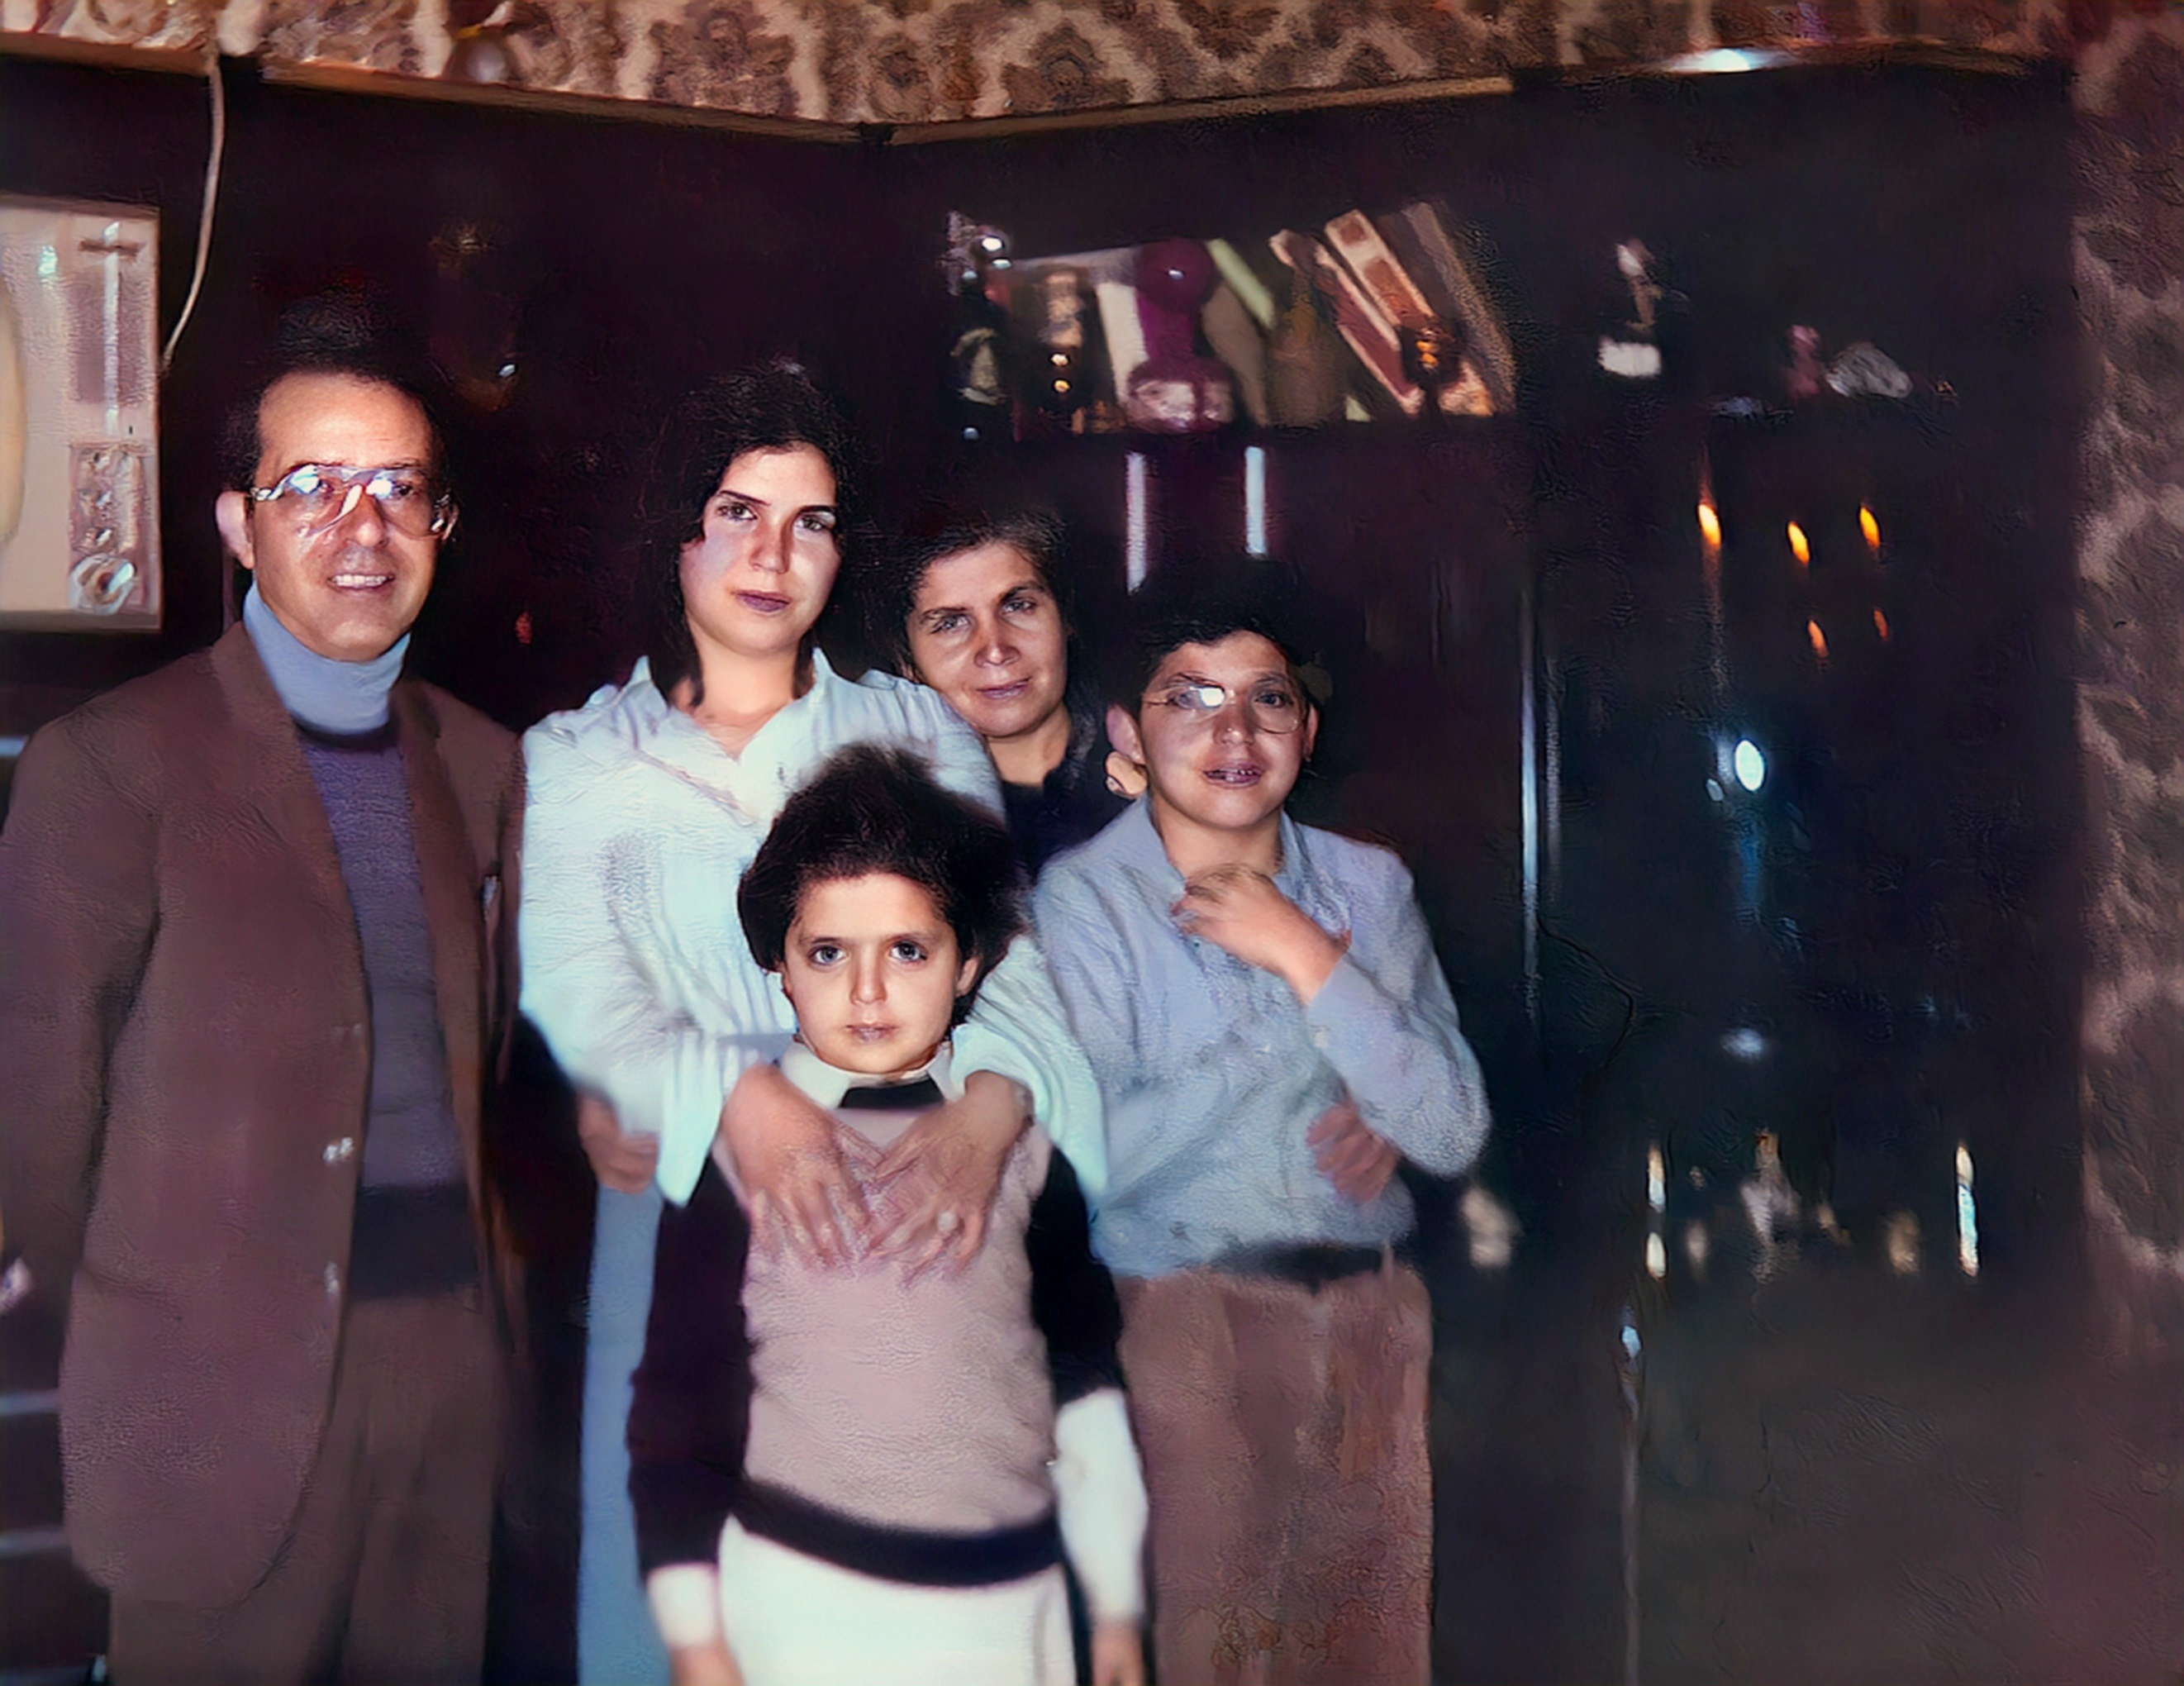 1978 Catania: Romano Salvatore, Orlandini Pina, Romano Lucia, Romano Gabriella e Romano Marcello.